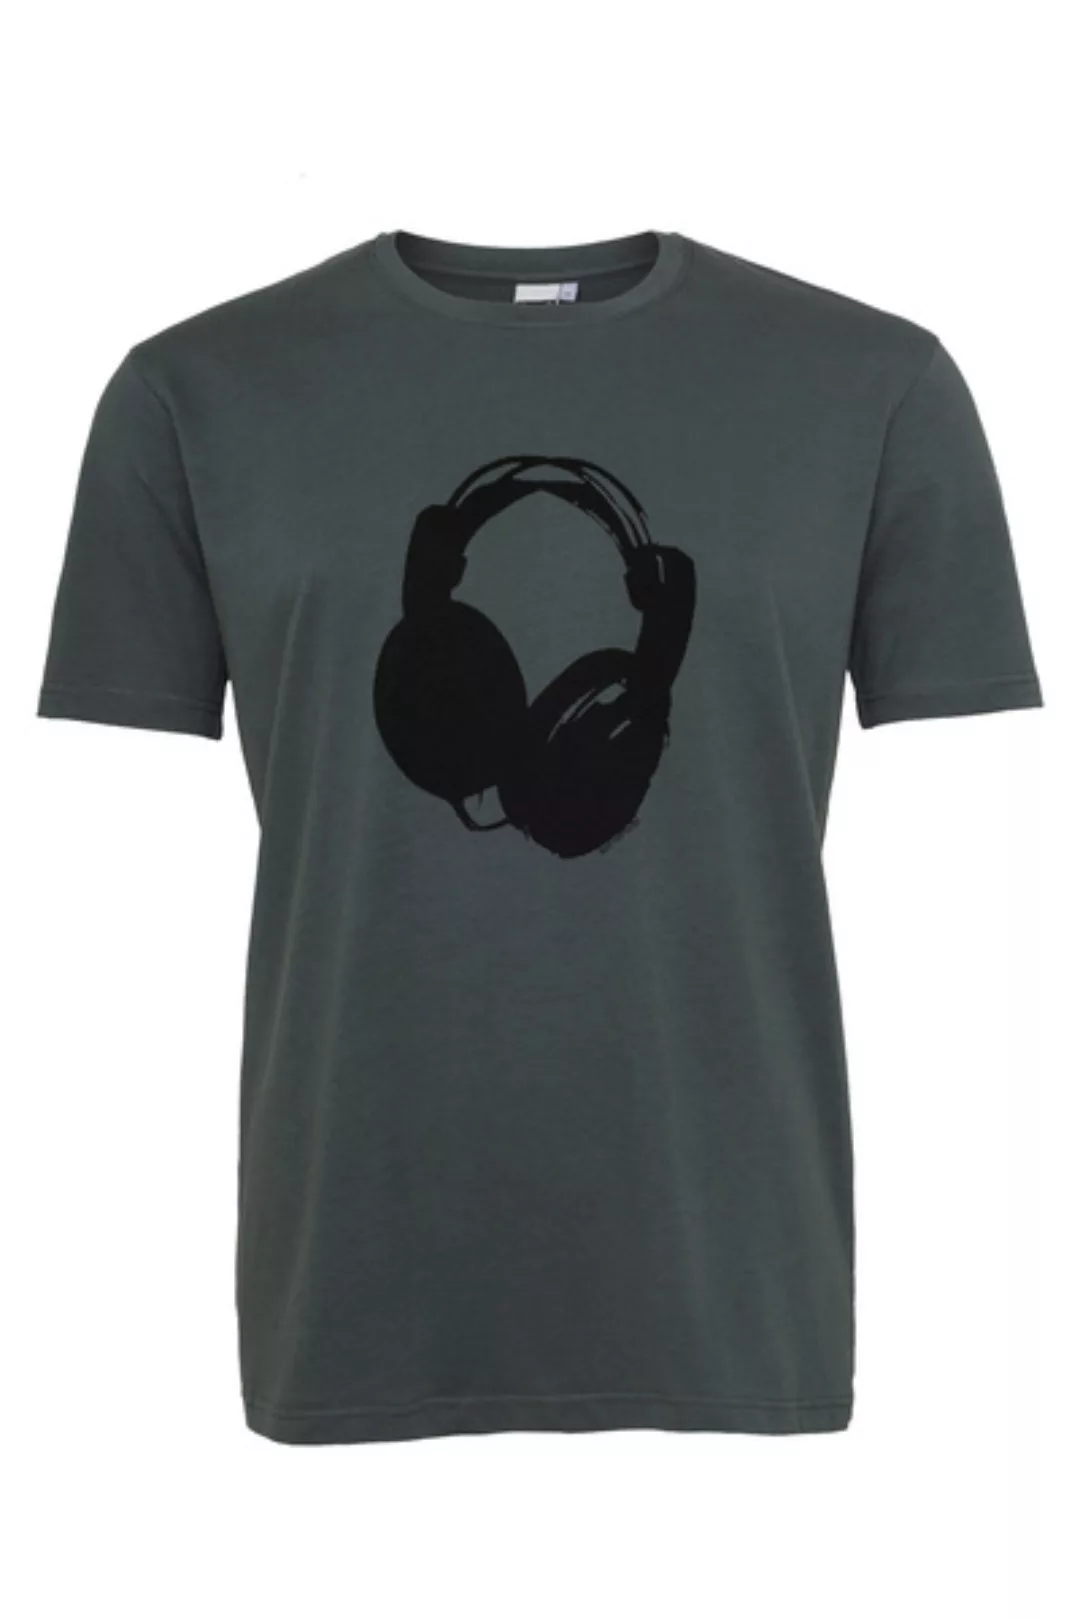 Herren T-shirt Mit Kopfhörer Aus Biobaumwolle, Made In Portugal Ilp06 - Sto günstig online kaufen